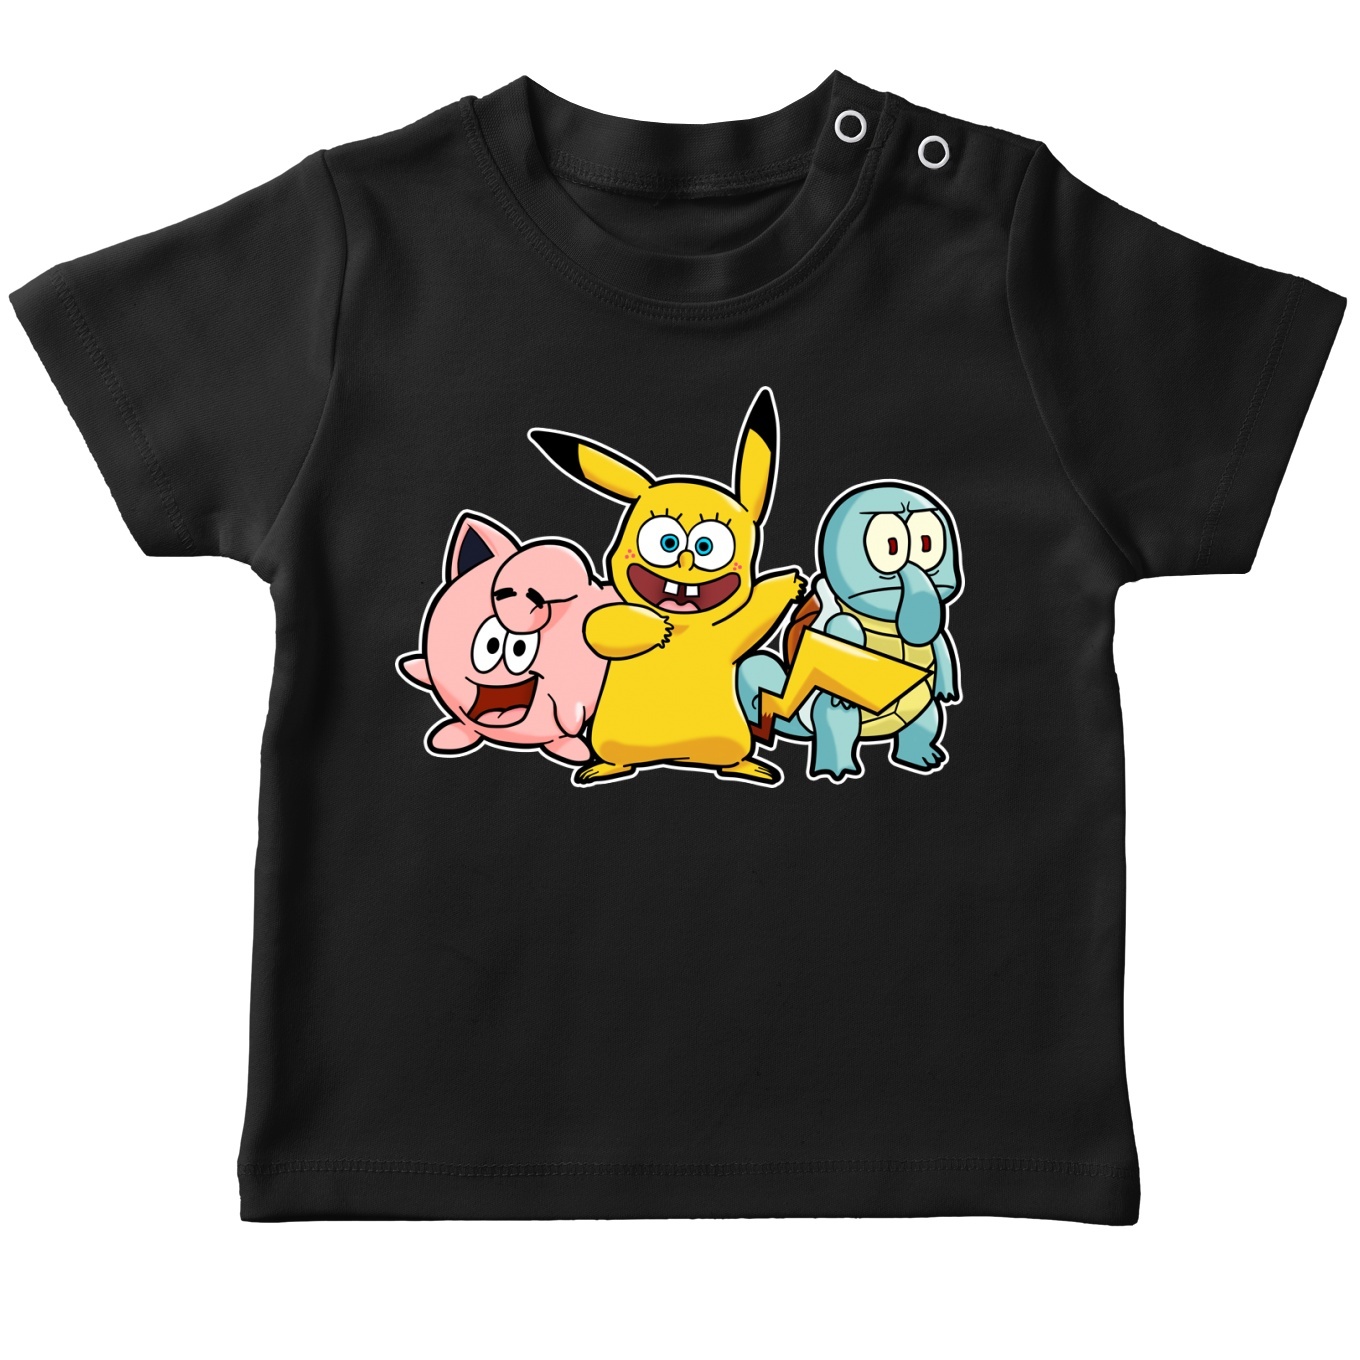 Pokémon Parody Black Baby's T-shirt - SpongeBob, Squidward Tentacles,  Patrick Star and Pikachu (Funny Pokémon Parody - High Quality T-shirt -  Size 775 - Ref : 775)